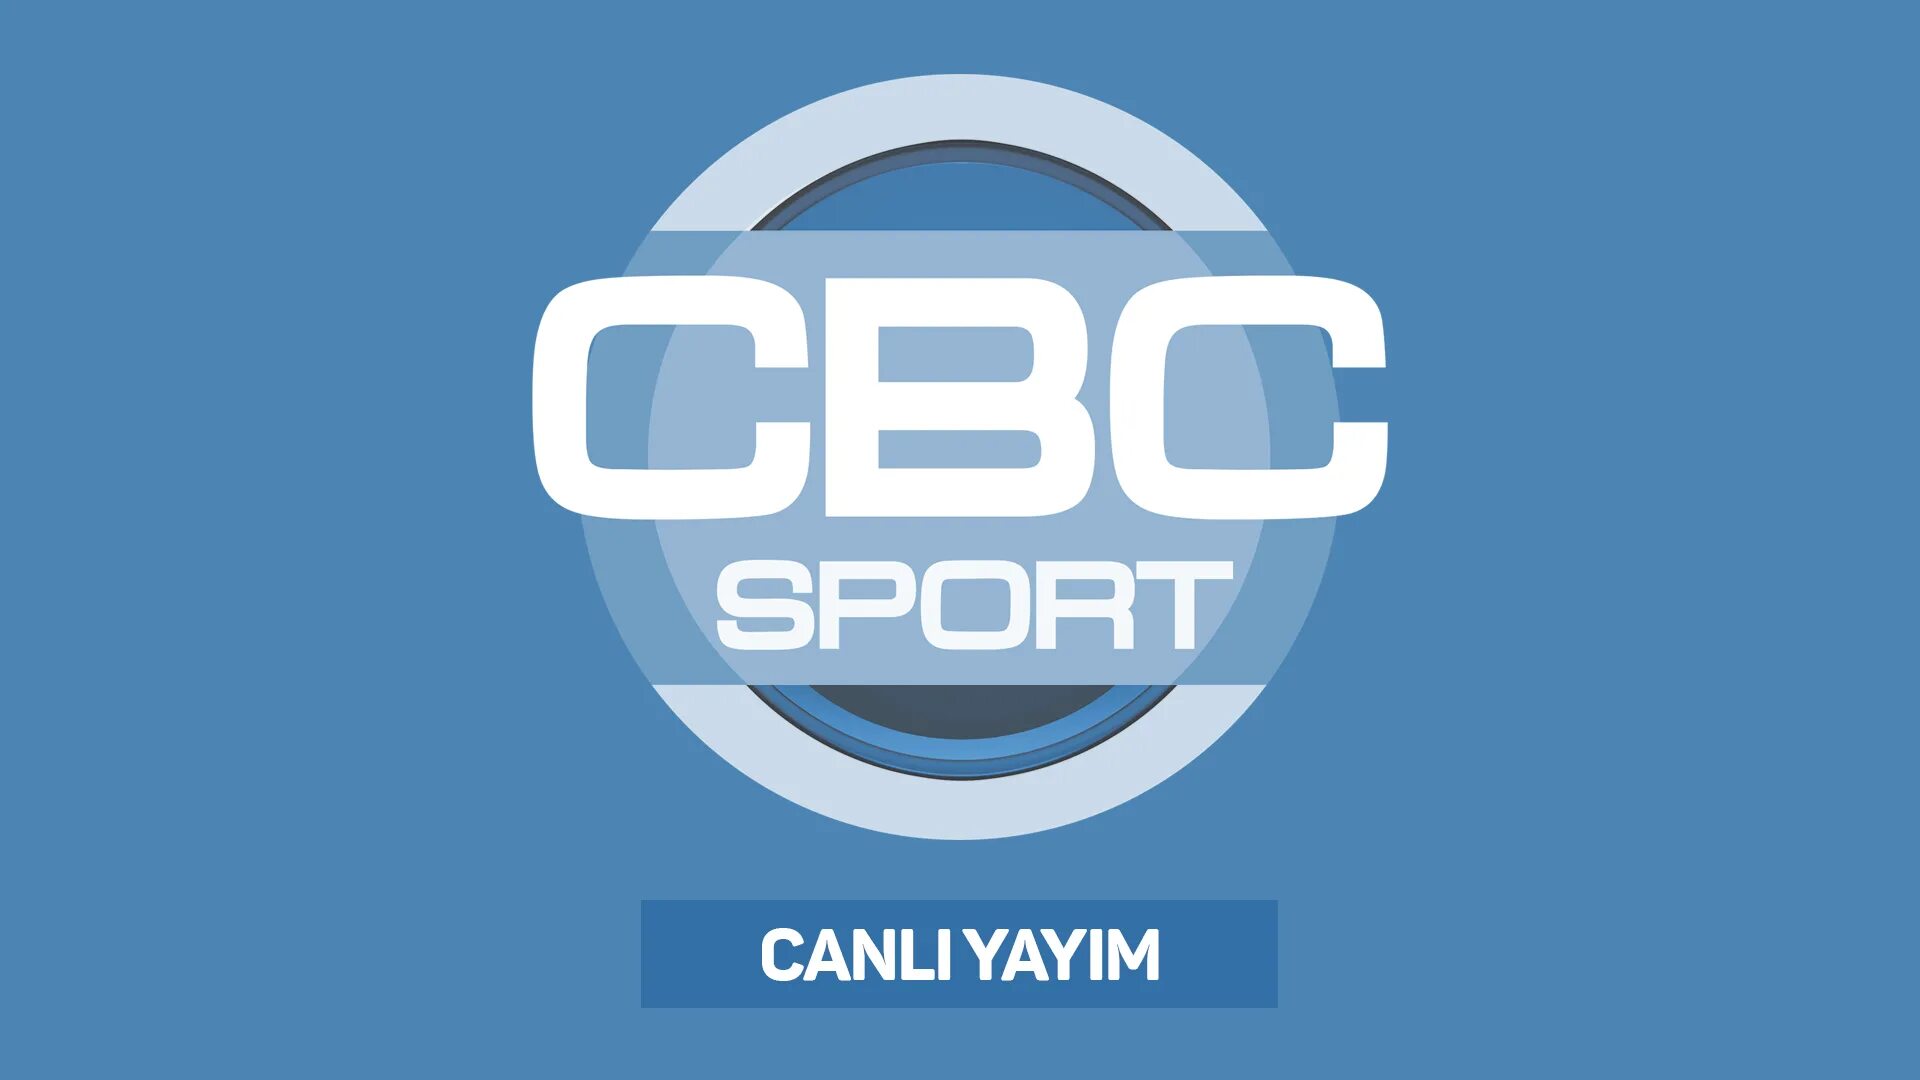 Cbs sport canli. CBC Sport. Телеканал CBC. Канал CBC Sport. CBC Sport logo.